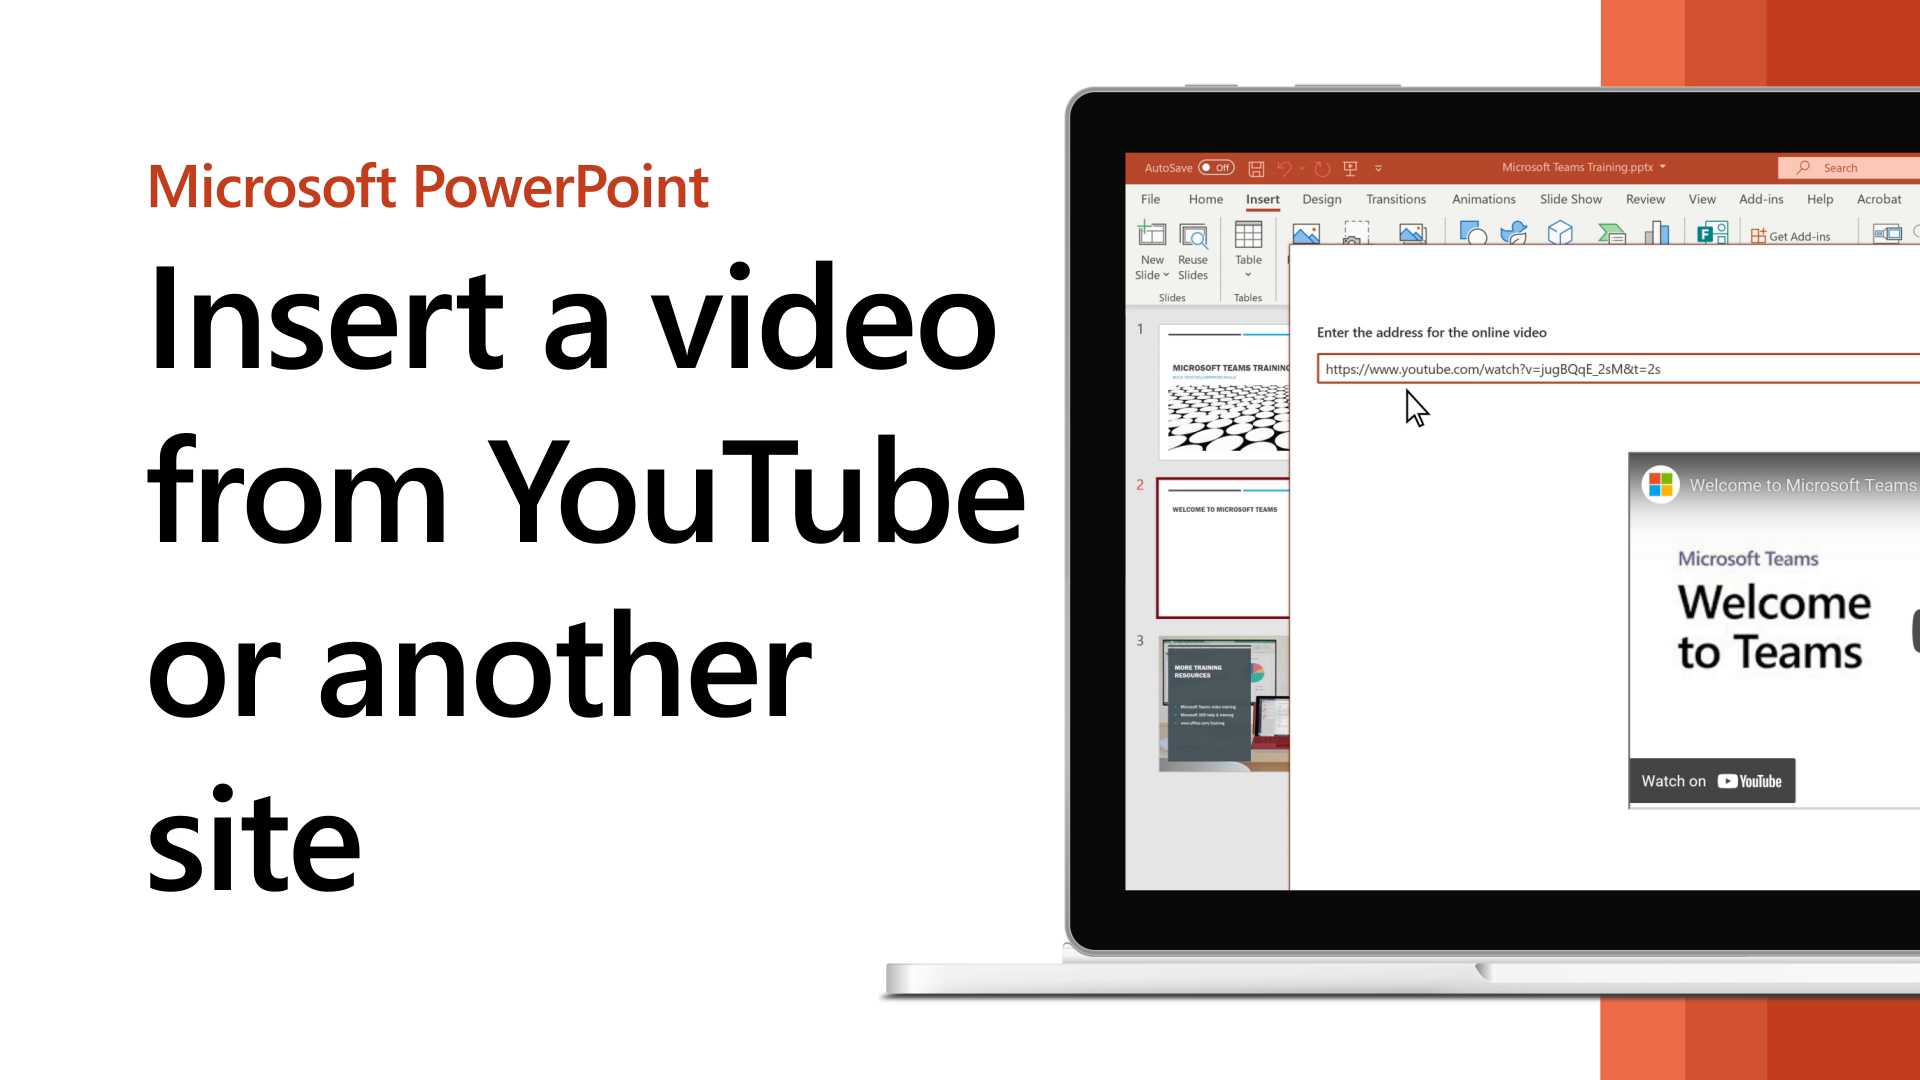 Chèn video: Việc chèn video vào tài liệu của bạn sẽ giúp truyền tải thông tin một cách dễ dàng và sinh động hơn. Nếu bạn muốn tạo ra một bài thuyết trình ấn tượng, hãy chèn video để thu hút sự chú ý của khán giả.